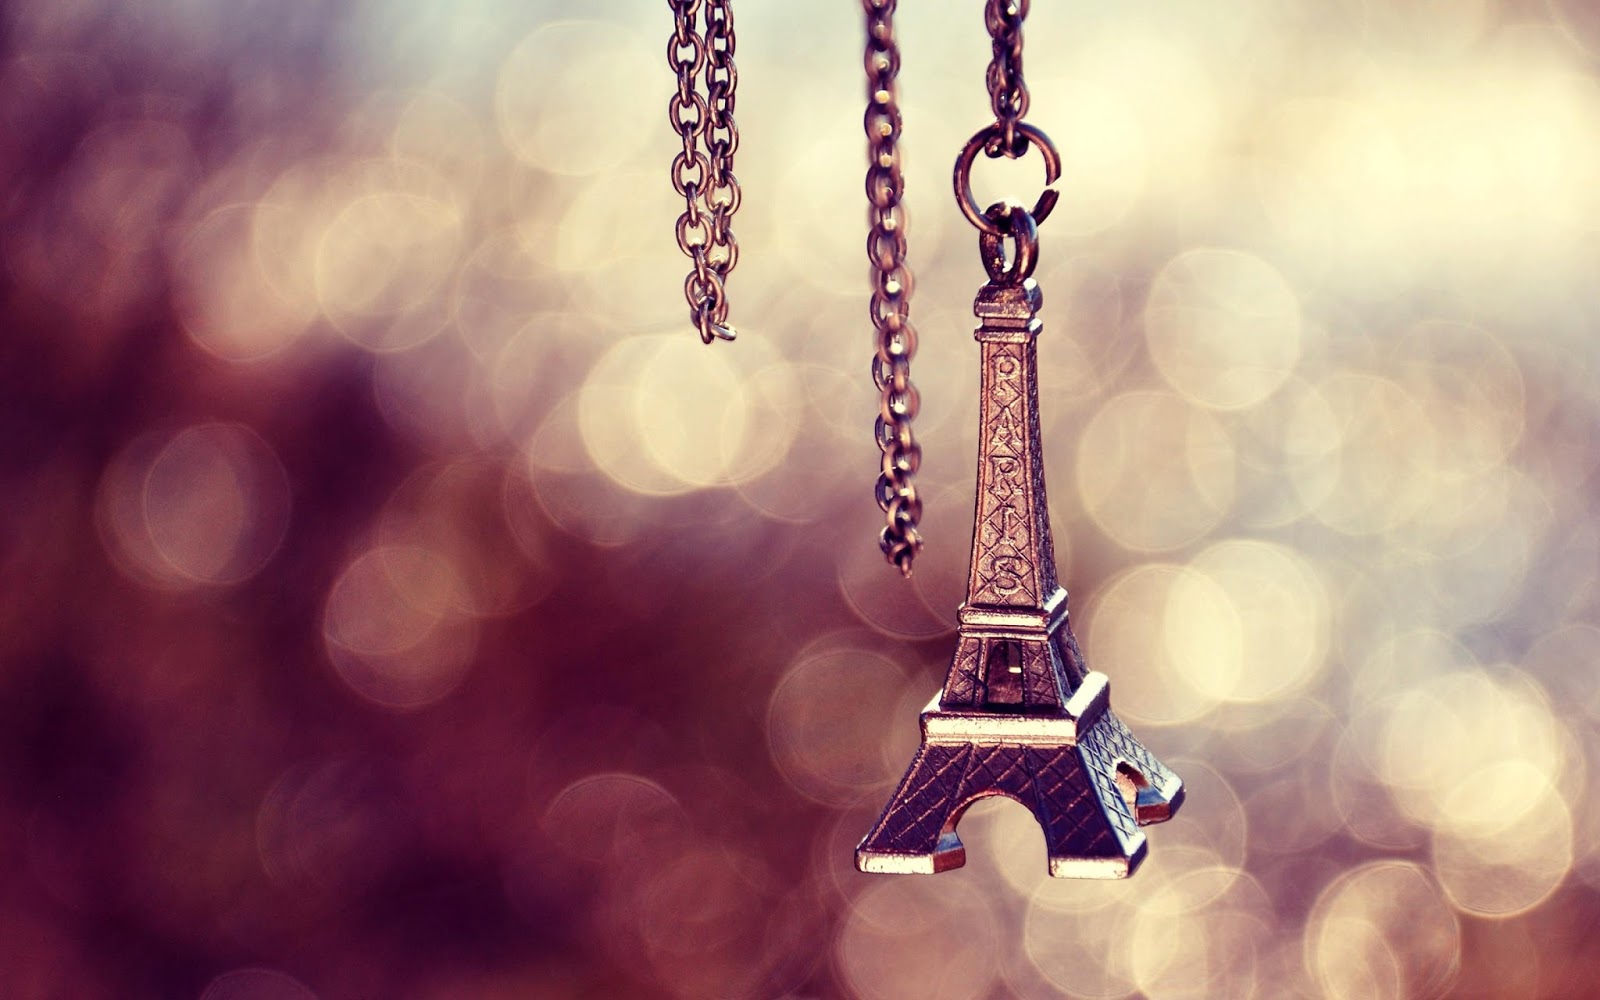 Hình Nền Tháp Eiffel Tưởng Tượng  Ảnh miễn phí trên Pixabay  Pixabay